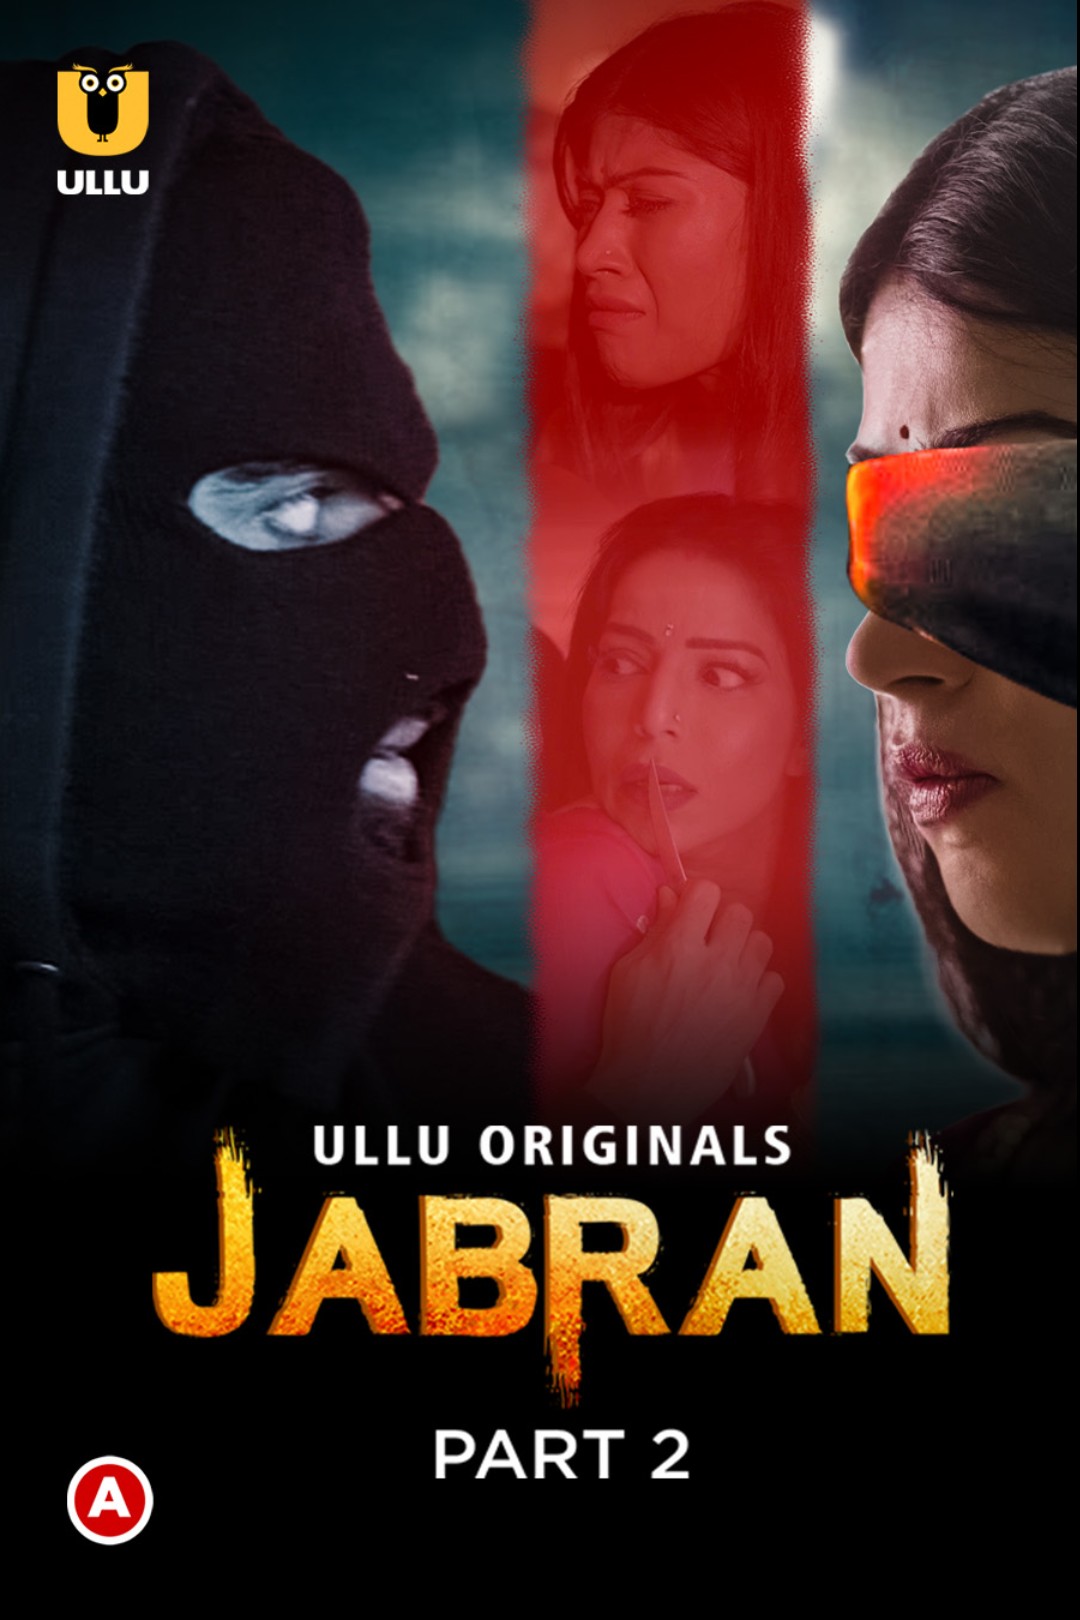 Download [18+] Jabran Part 2 (2022) Hindi Ullu Web Series HDRip 1080p [1.2GB] | 720p [550MB] | 480p [250MB] download